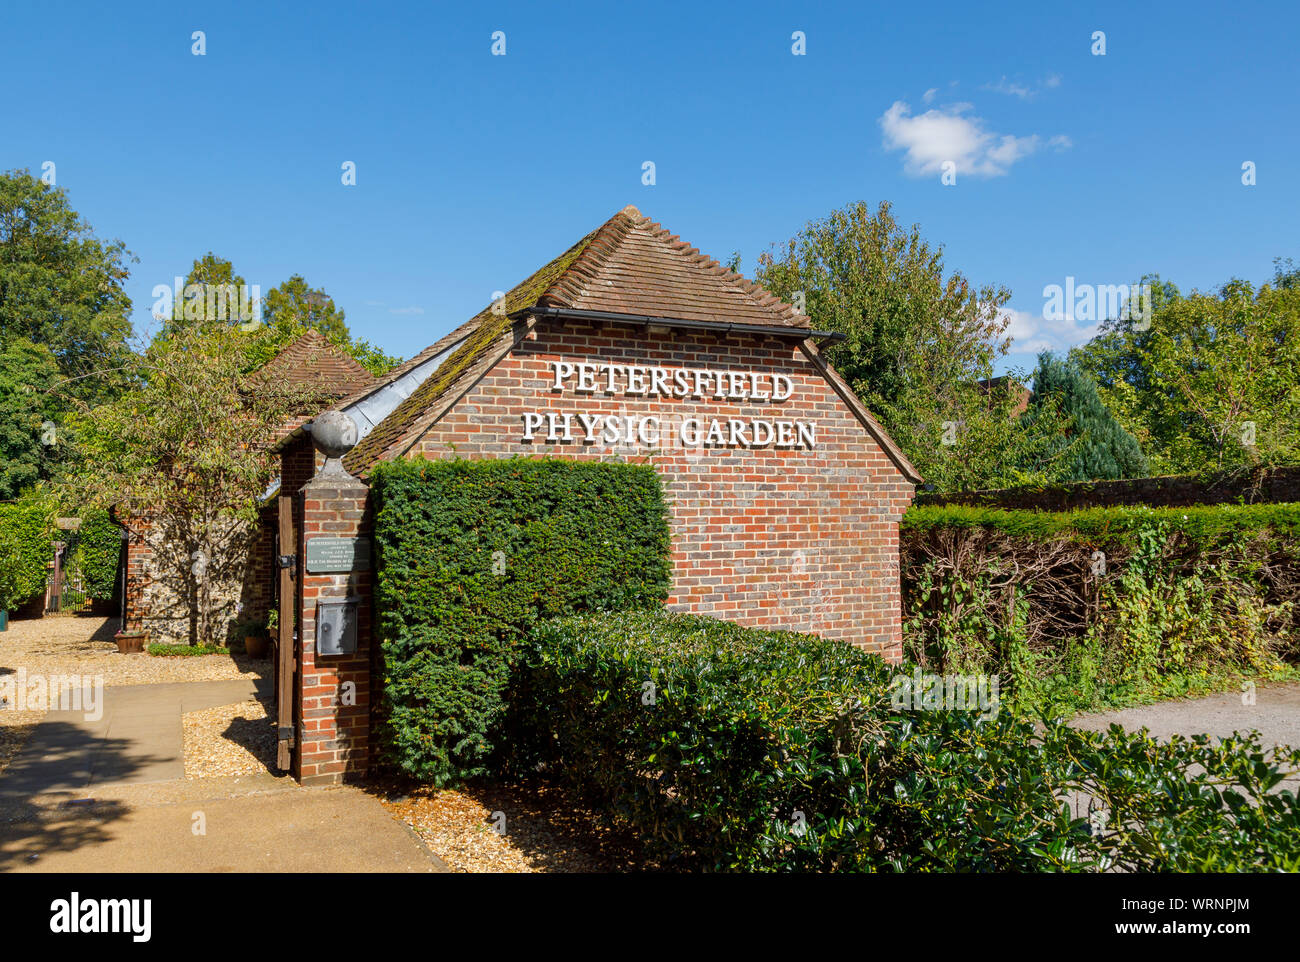 Entrée de la Petersfield Physic Garden, un jardin botanique Jardin des plantes aromatiques de plantes médicinales ouvert au public en Petersfield, Hampshire, Angleterre du sud Banque D'Images